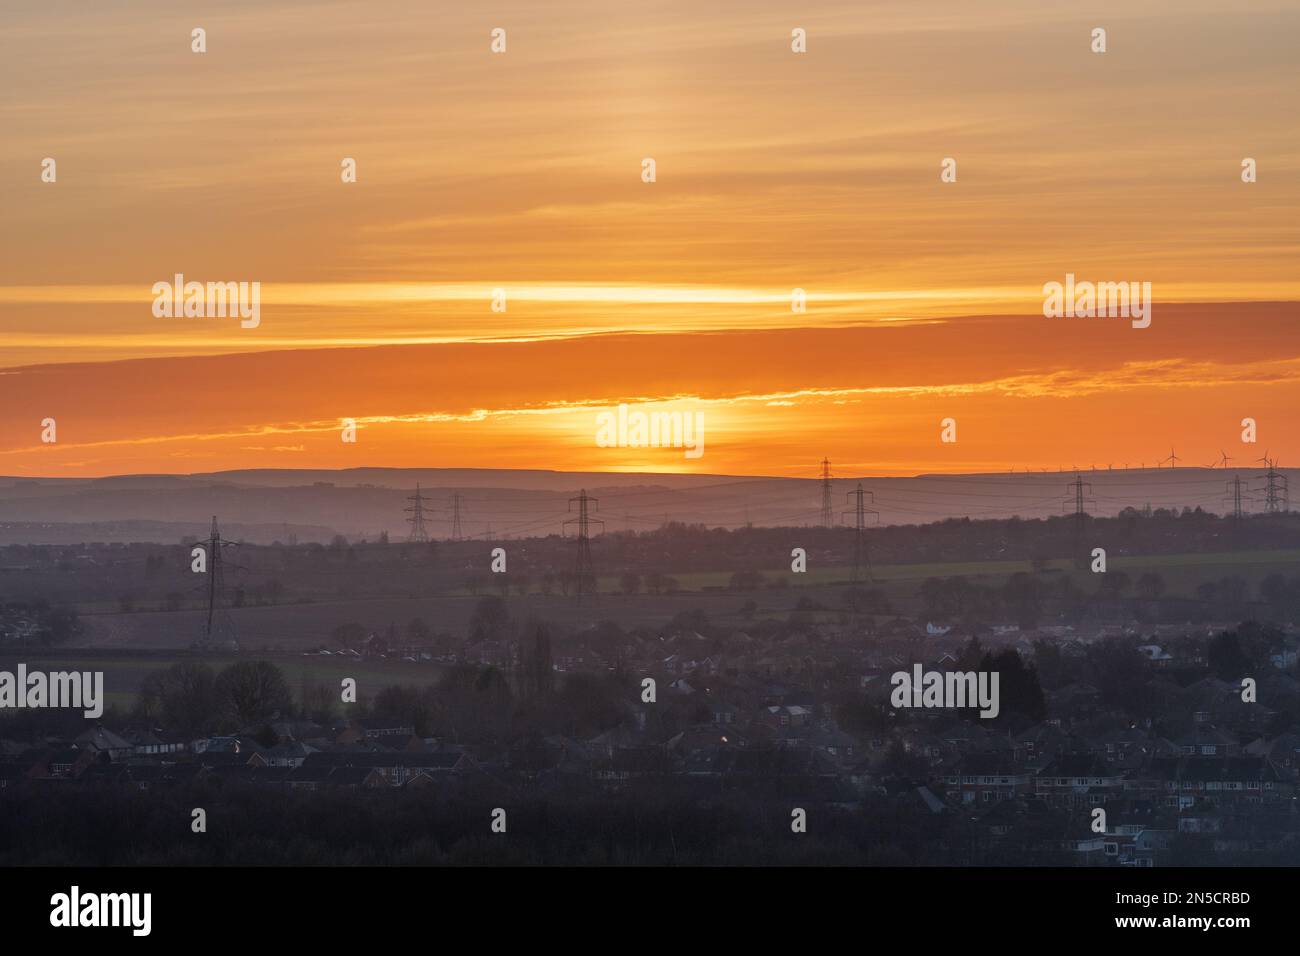 Paysage du nord de l'Angleterre avec coucher de soleil en février, Royaume-Uni Banque D'Images